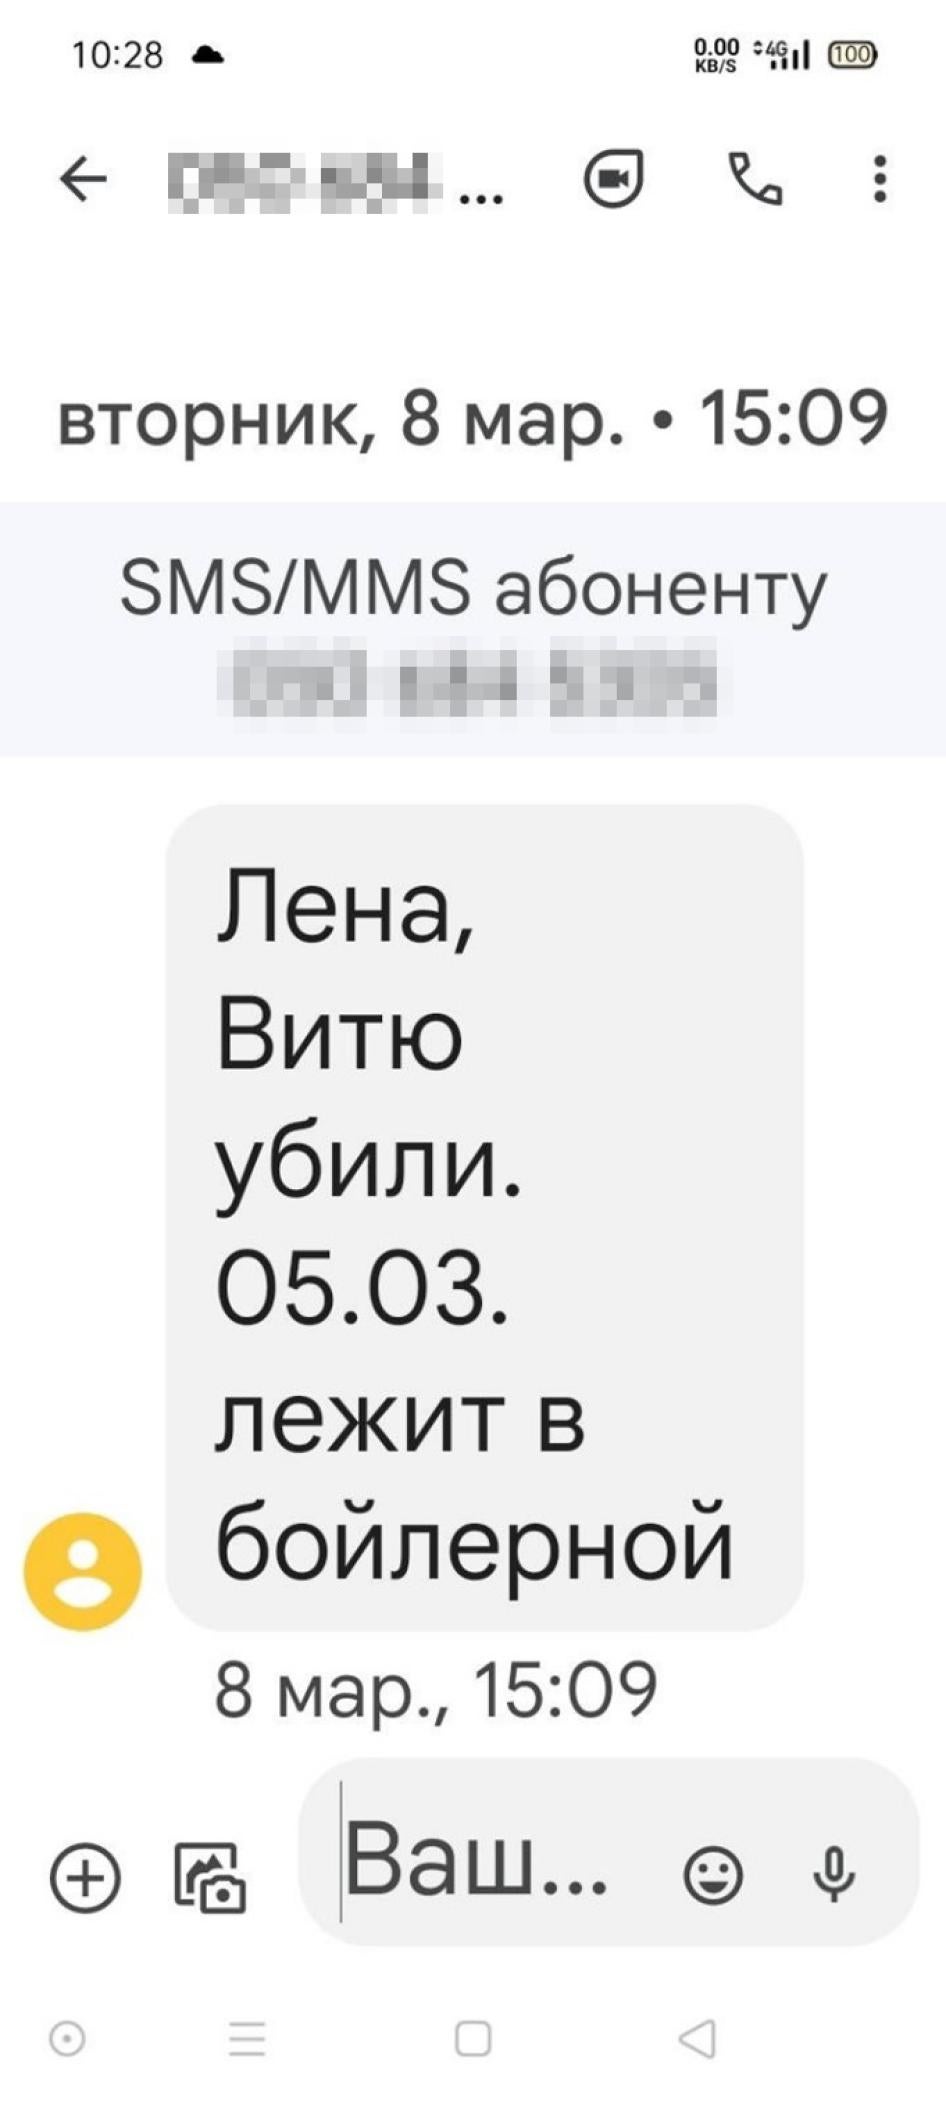 Screenshot of a text message in Ukrainian